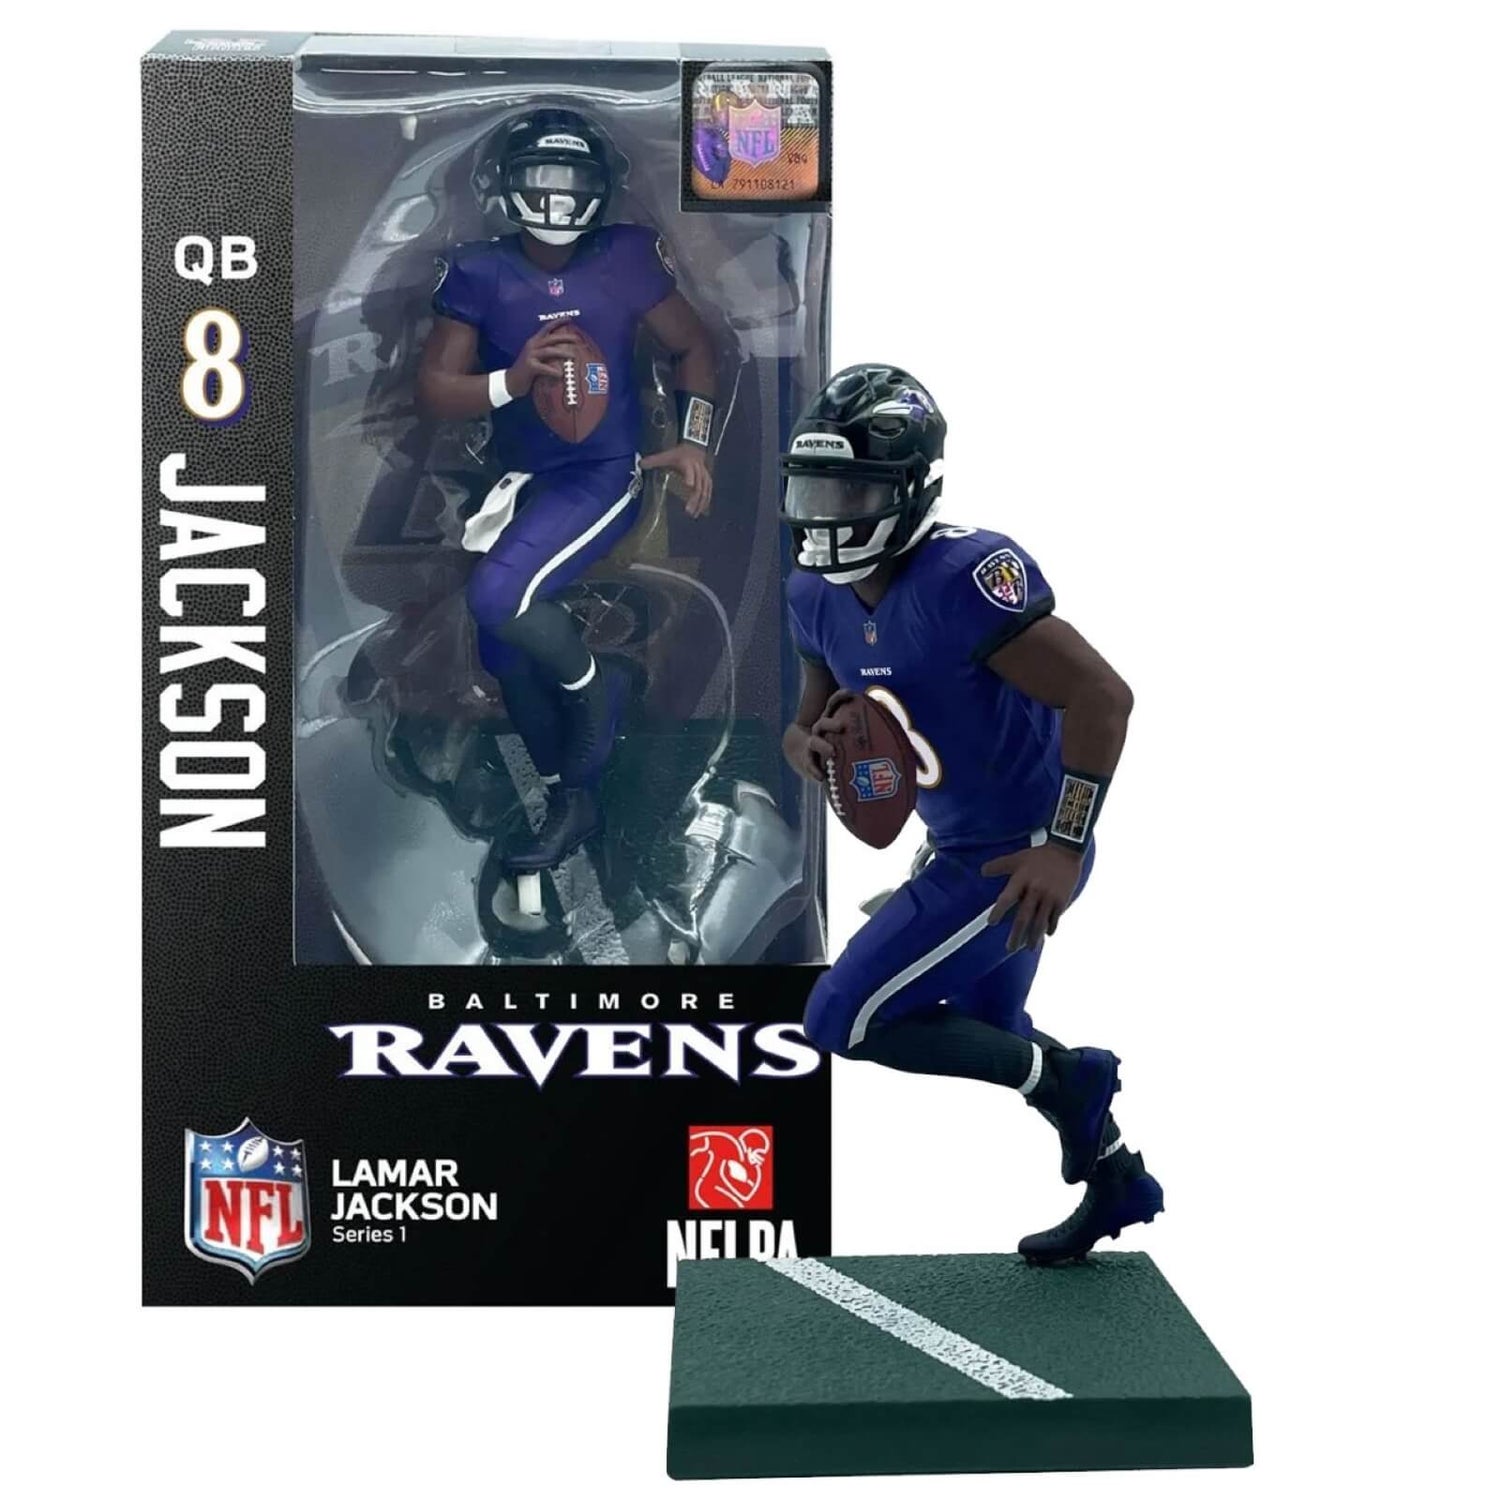 NFL Baltimore Ravens 7" Action Figure - Lamar Jackson